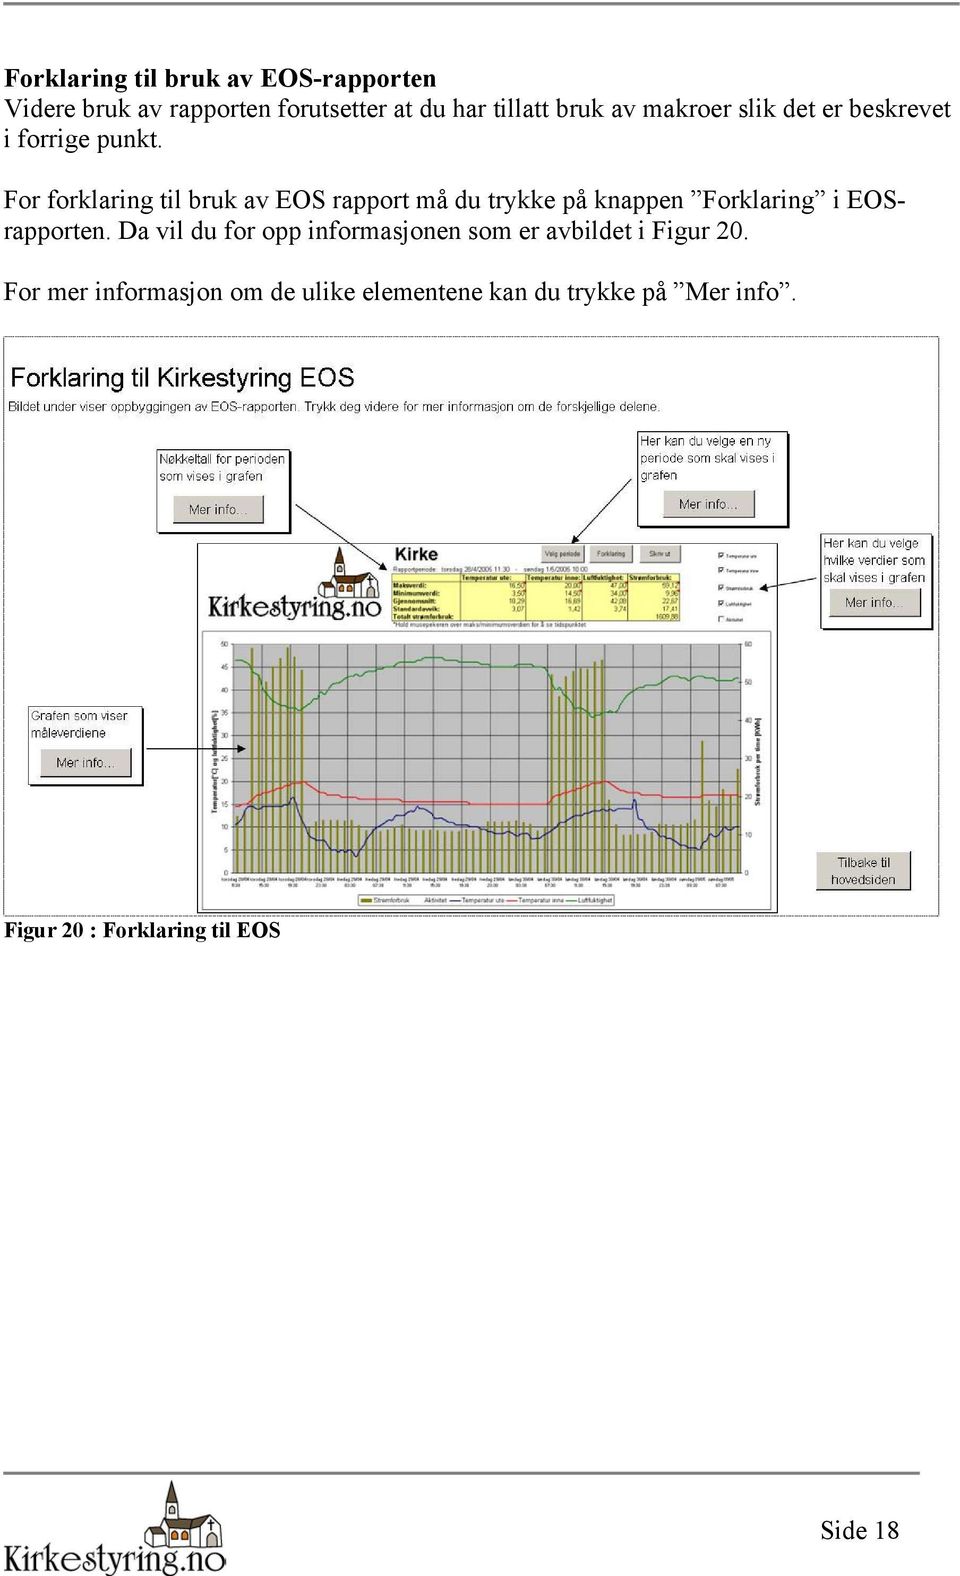 For forklaring til bruk av EOS rapport må du trykke på knappen Forklaring i EOSrapporten.